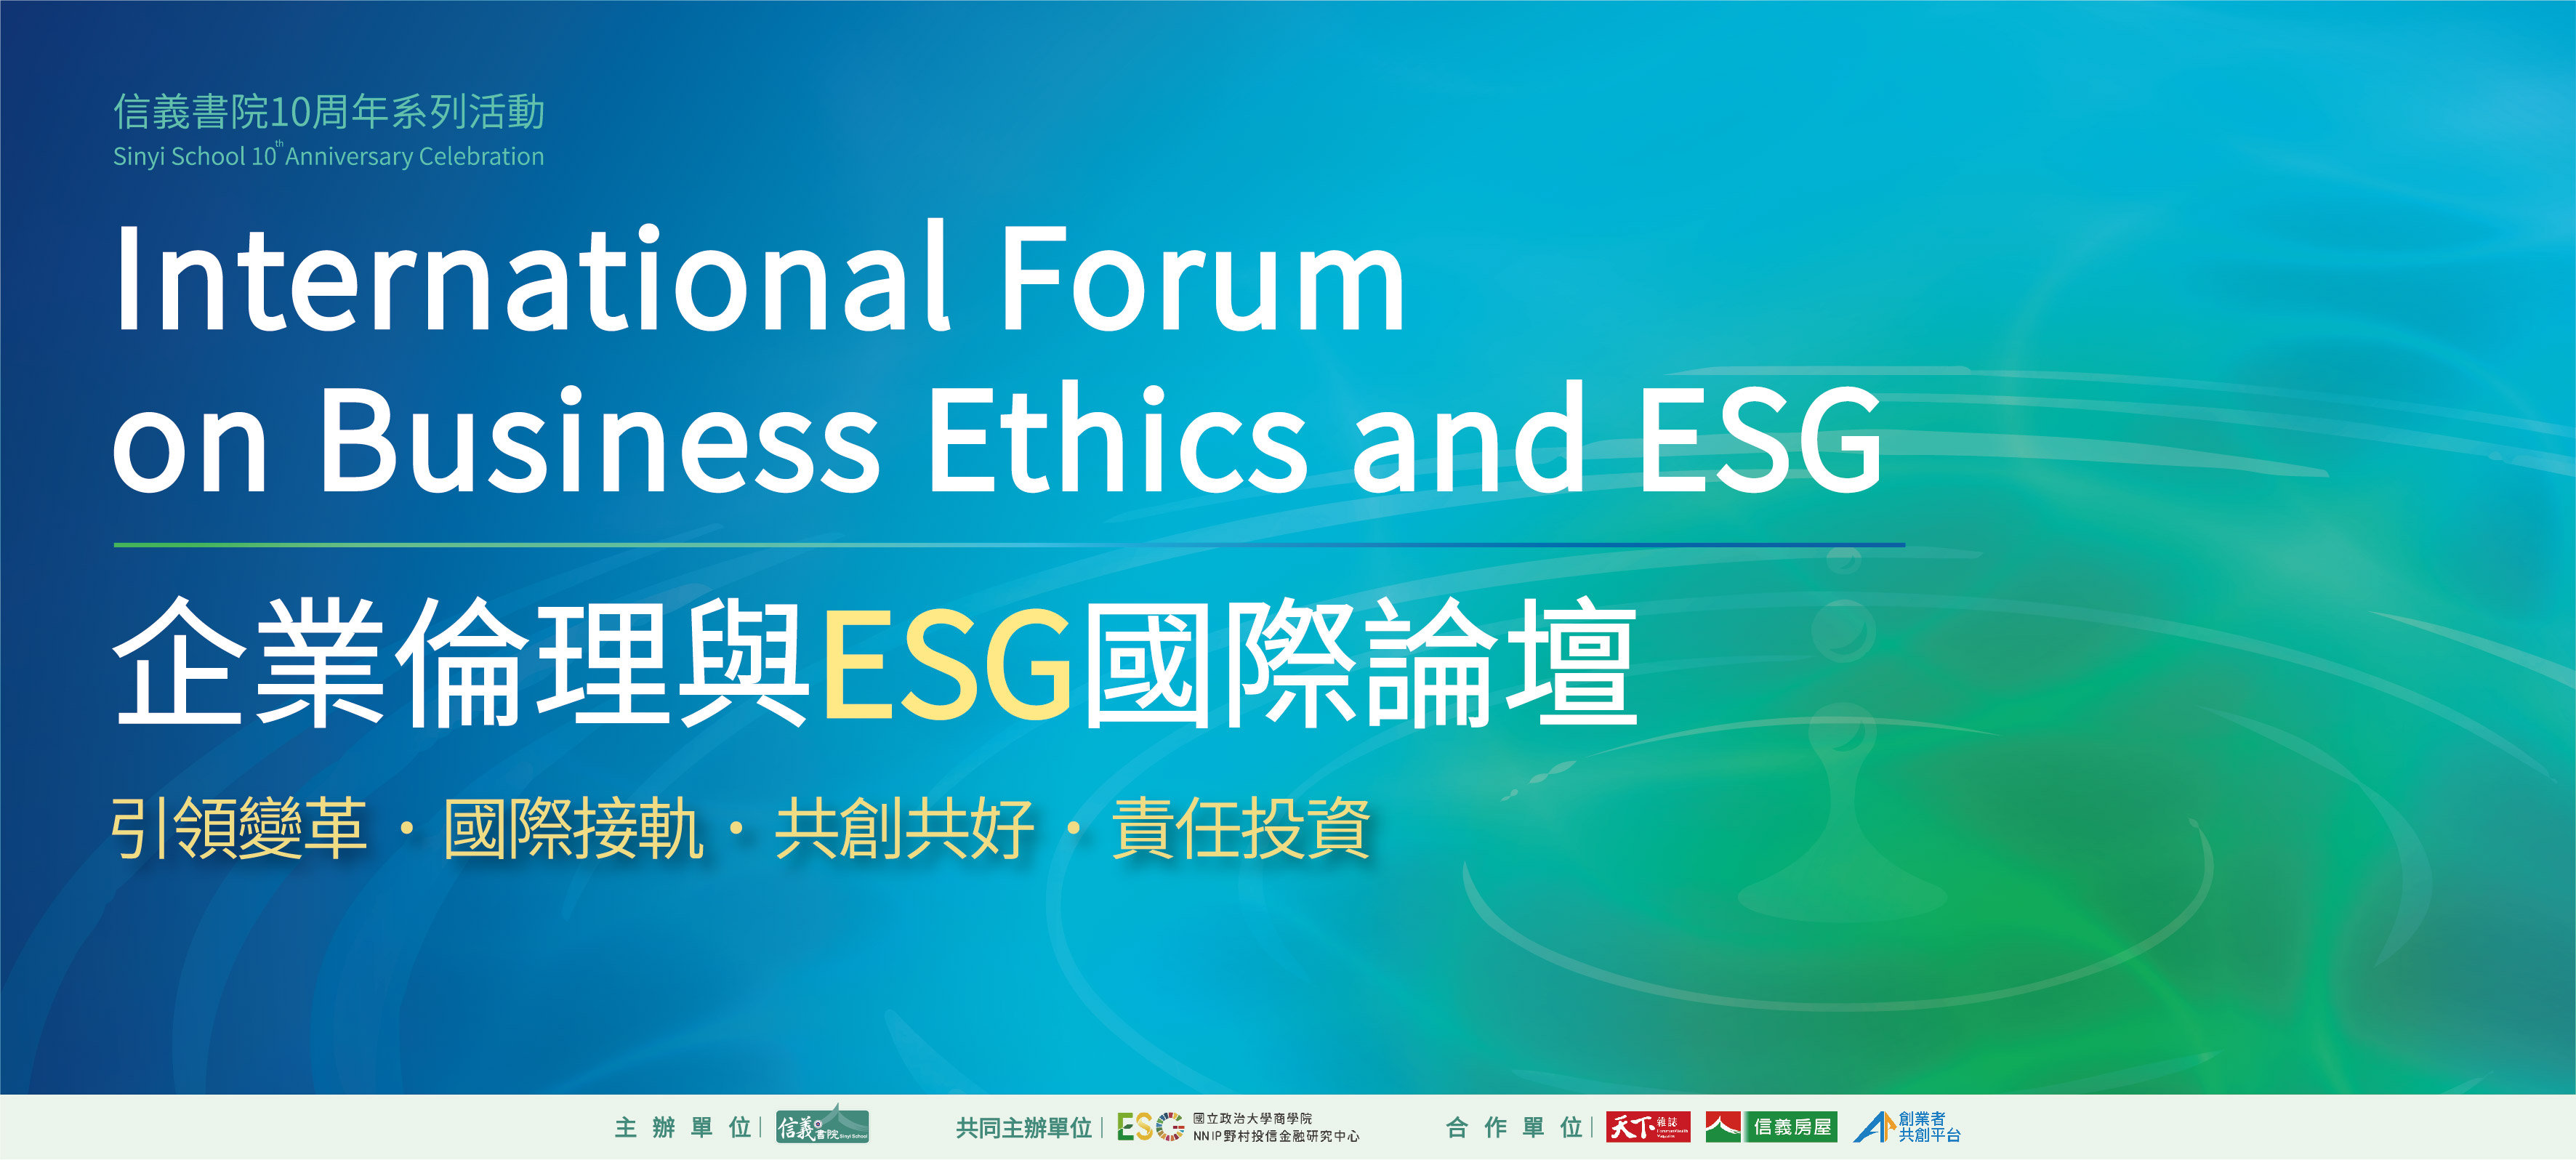 企业伦理与ESG国际论坛_活动主视觉_首页轮播